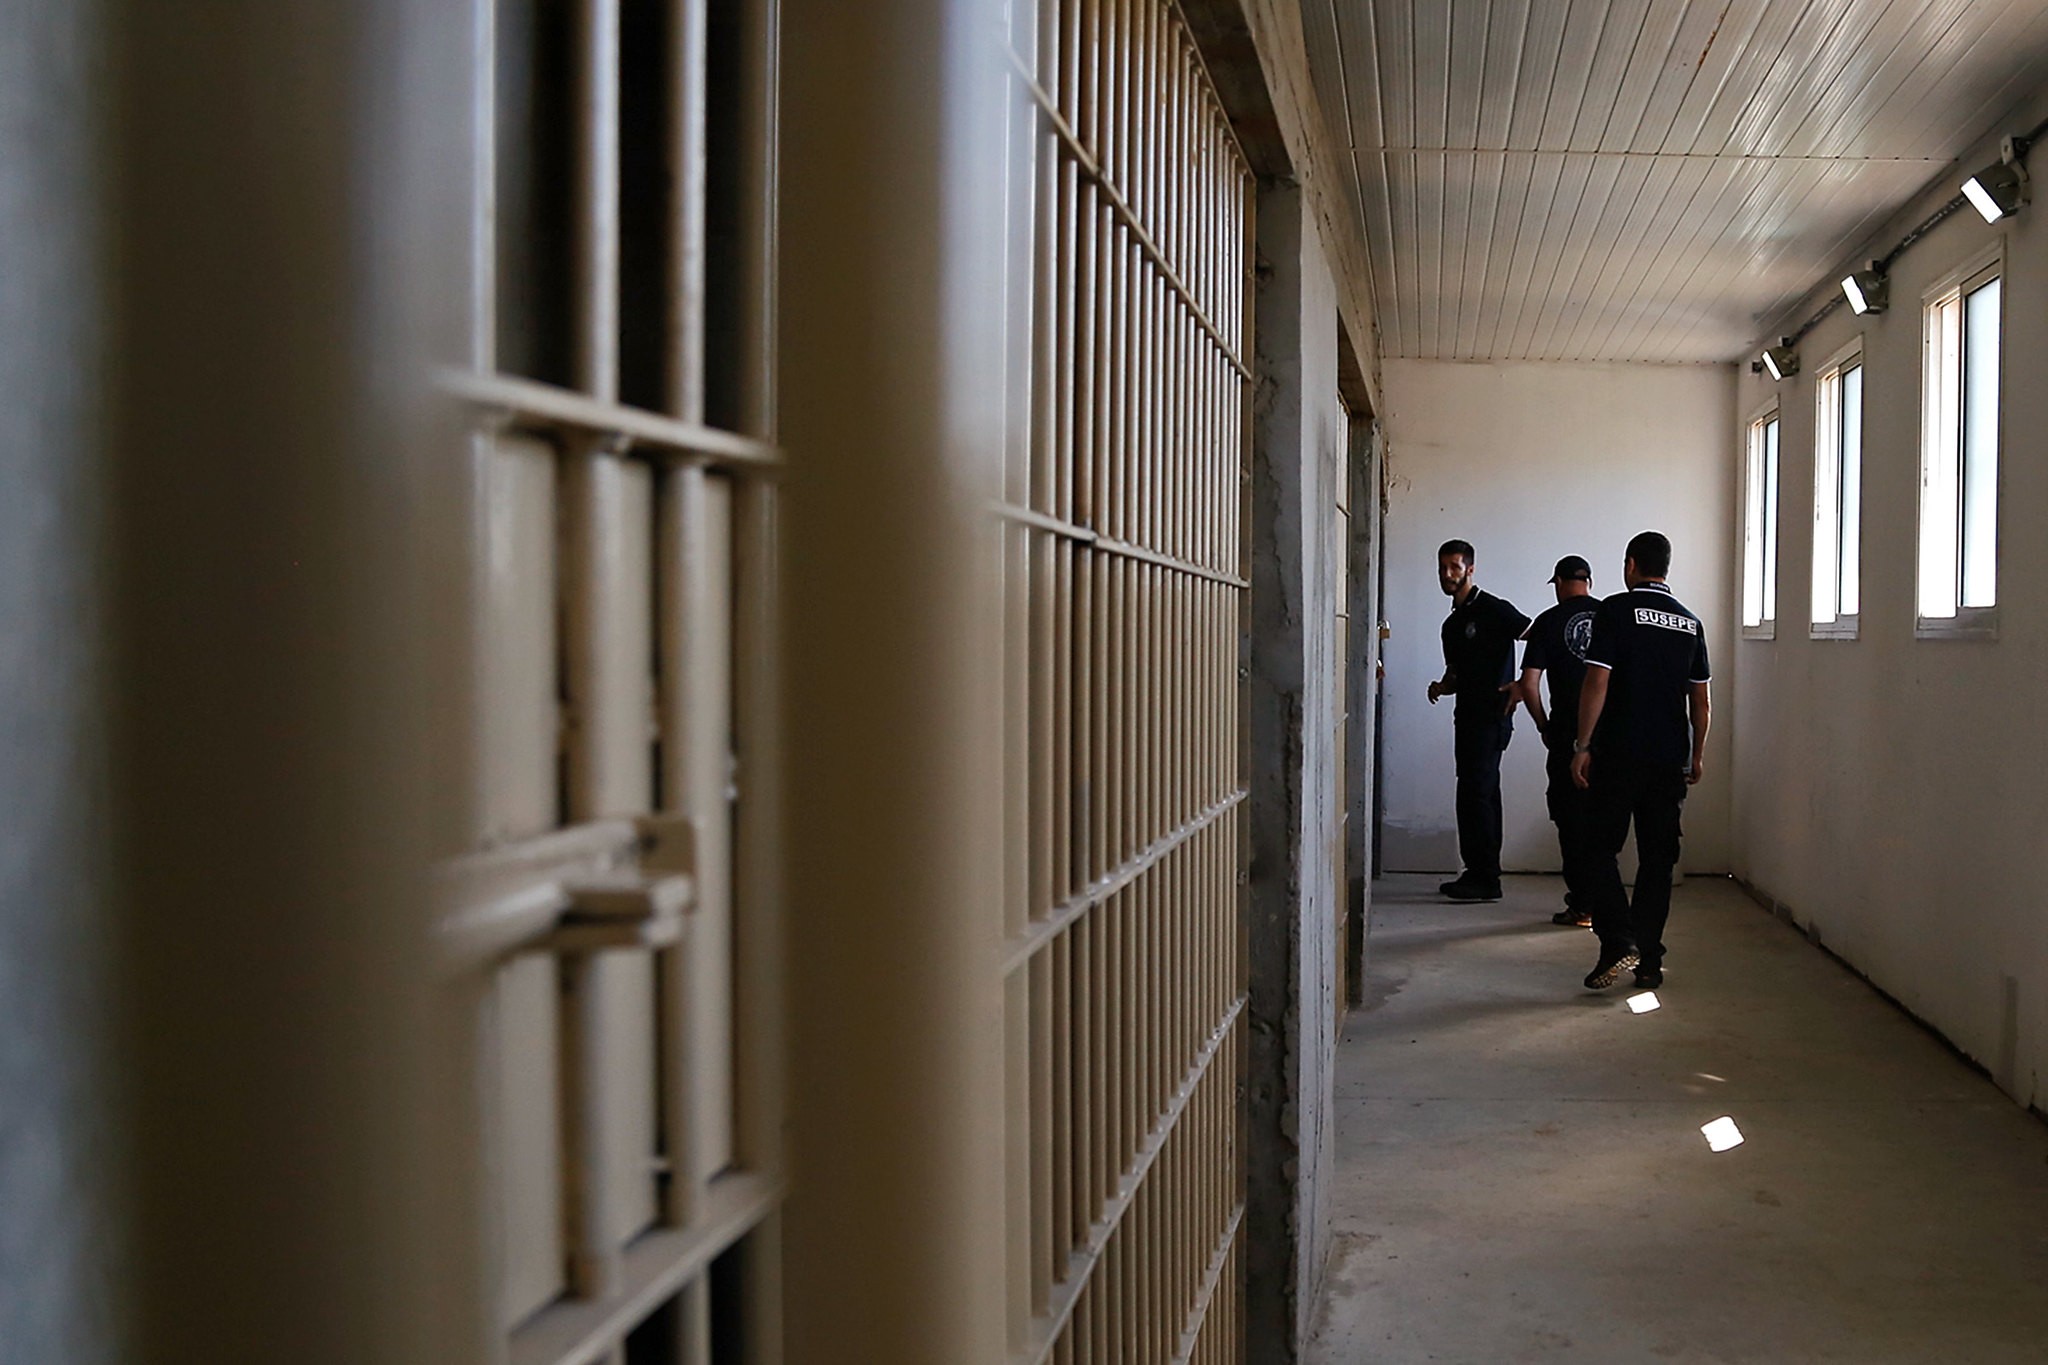 Saidinha de Natal: quatro presos não voltaram para a cadeia no RS após cerca de 100 dias, diz Susepe